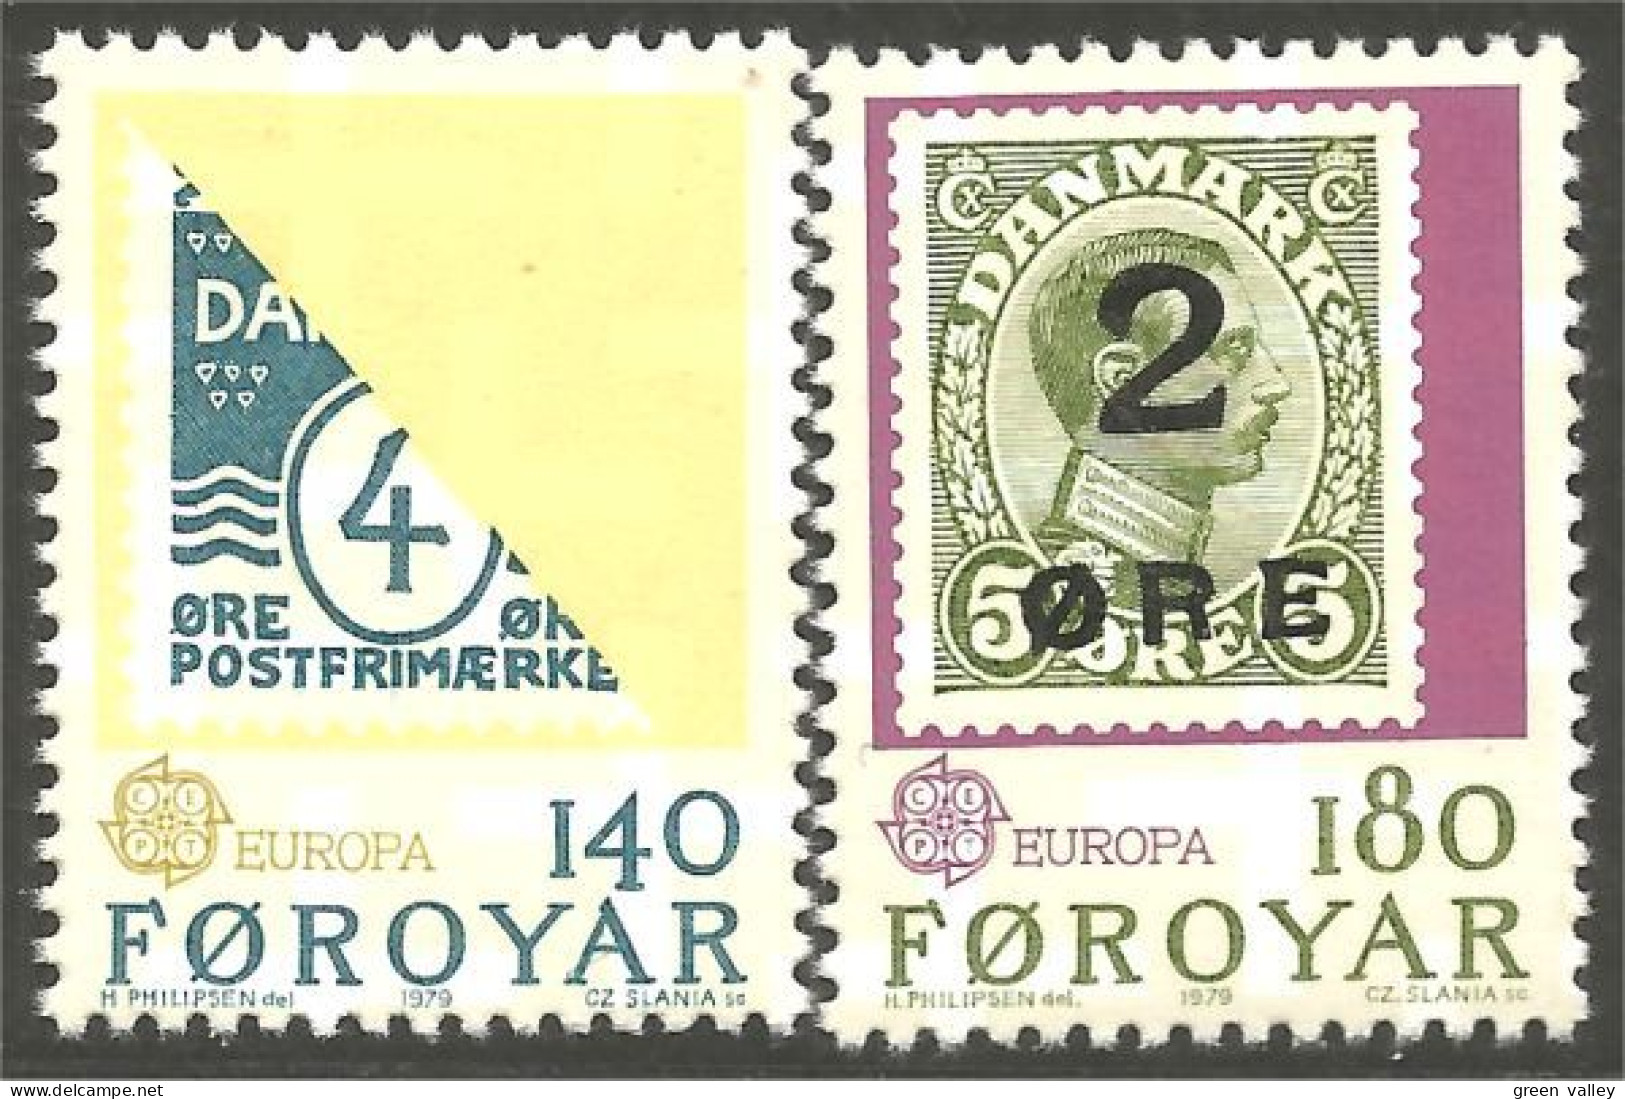 TT-1a Foroyar Féroé Europa Danmark Stamps Timbres Briefmarken Francobollo Sellos MNH ** Neuf SC - Faroe Islands